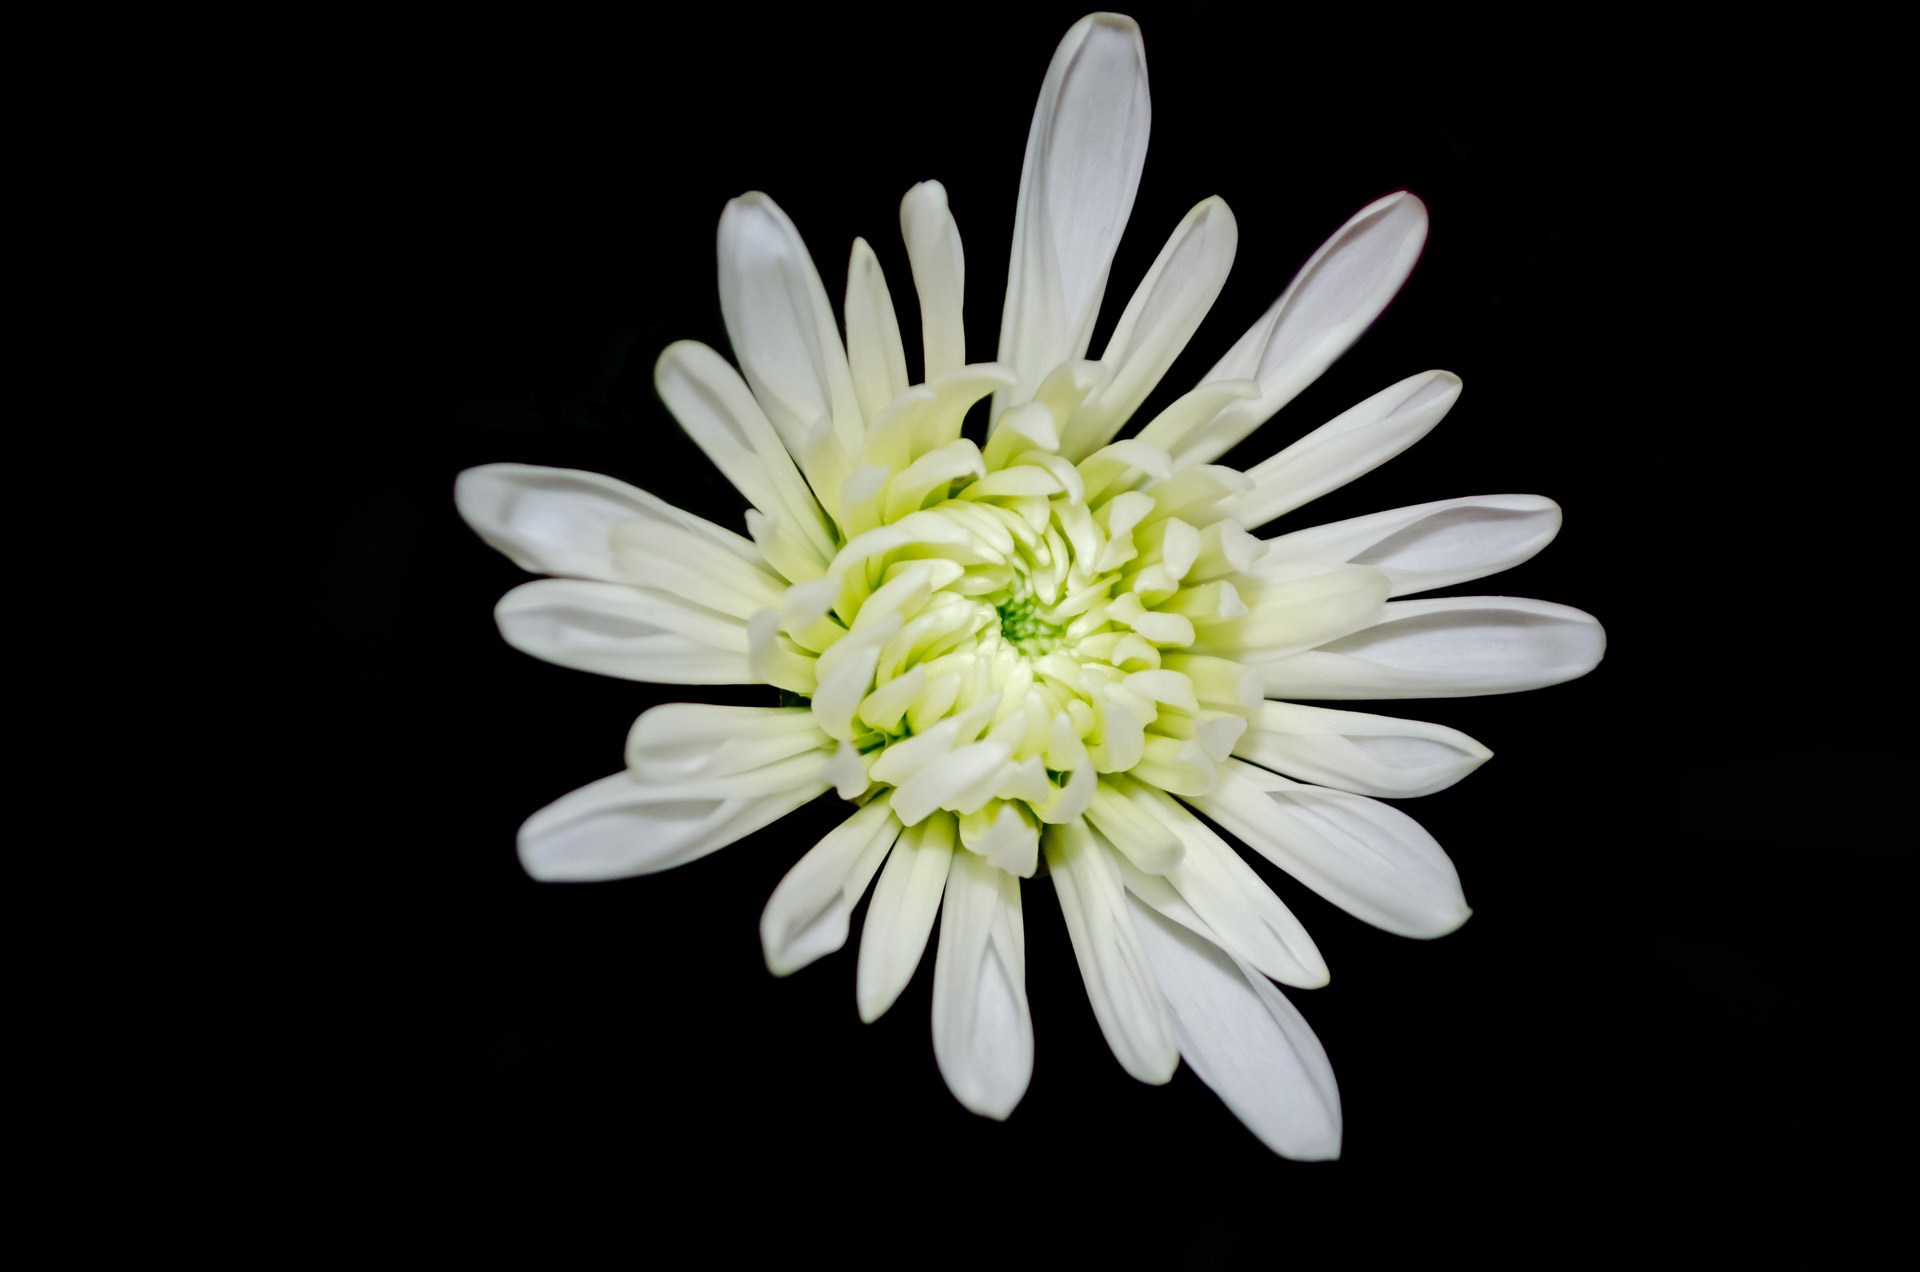 White Flower On Black Background Free Stock Photo - Public ...